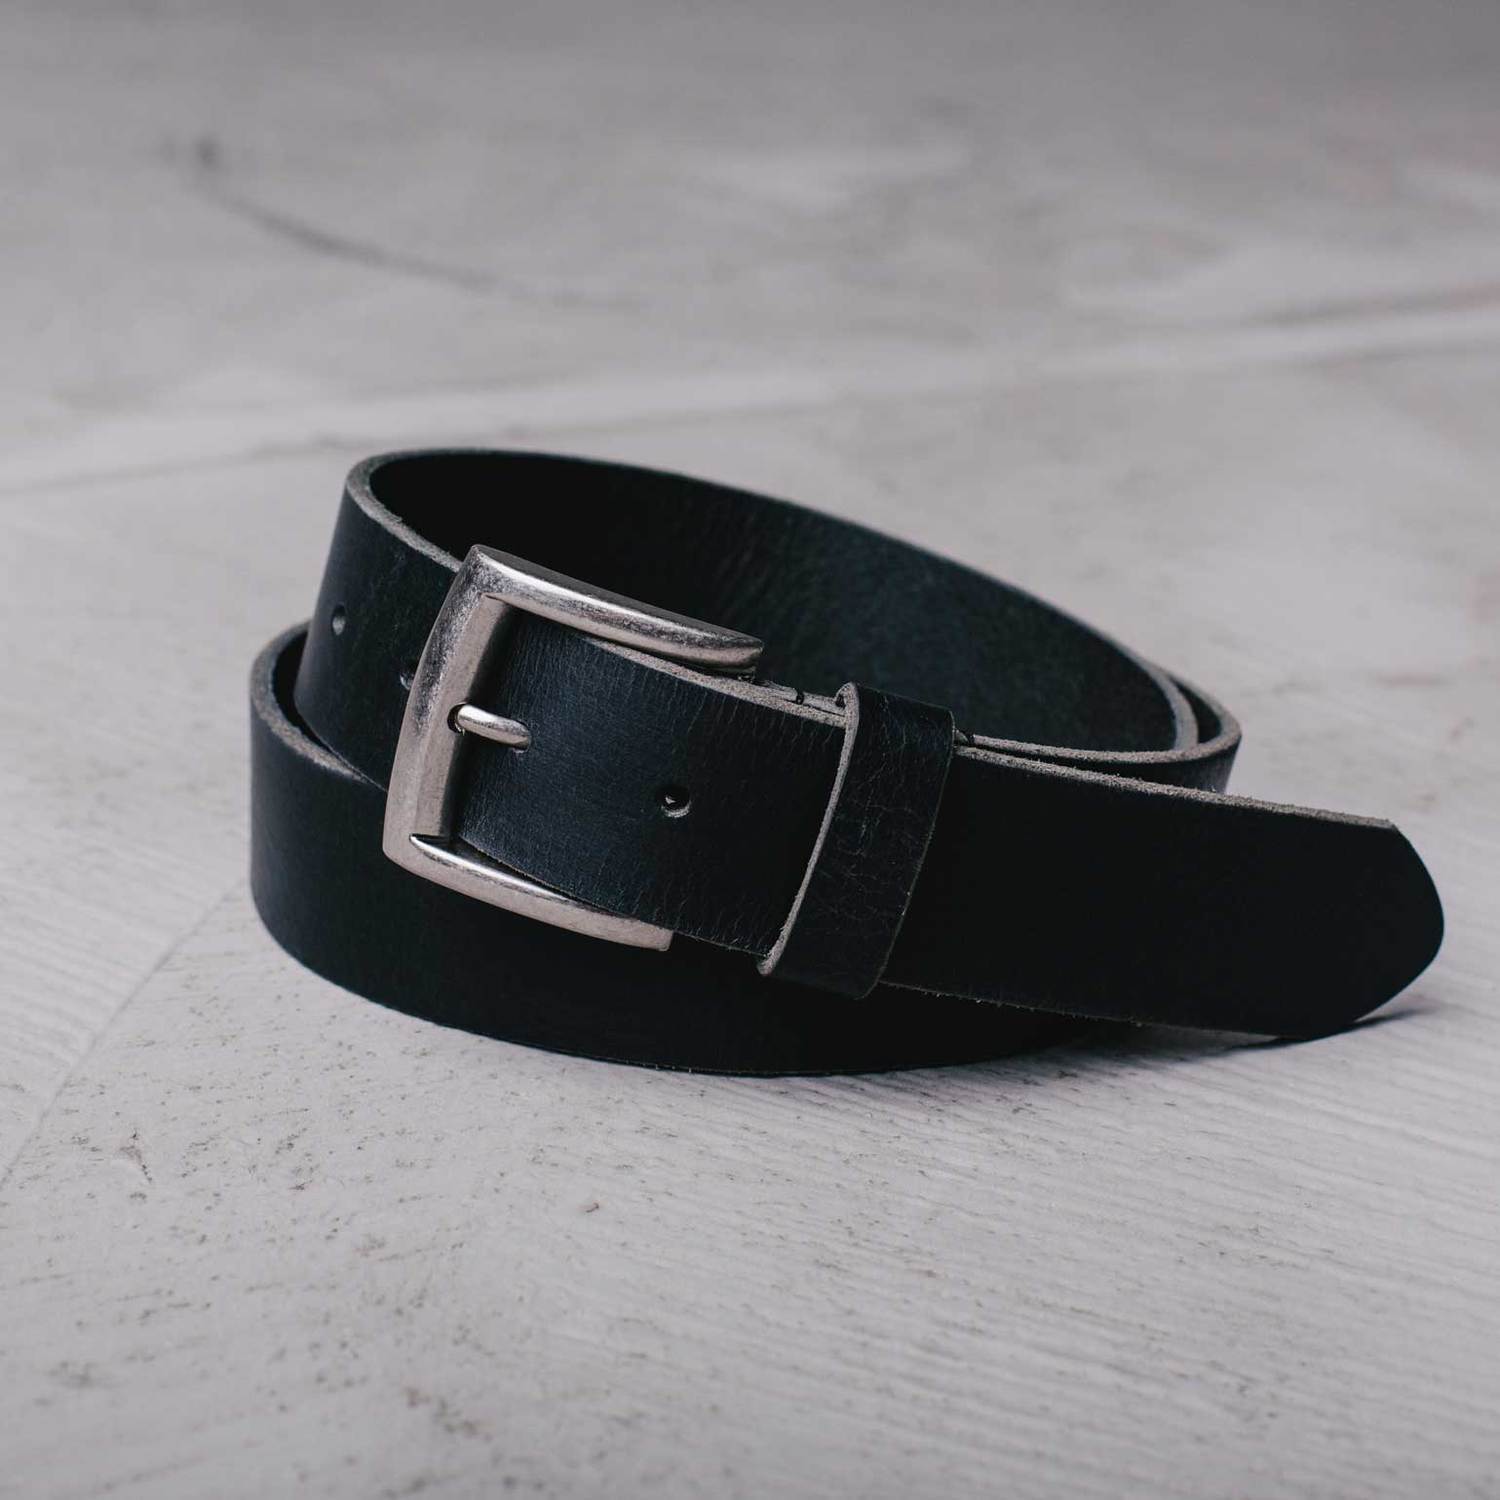 Mens Standard Leather Belt In Black $45 | DSTLD